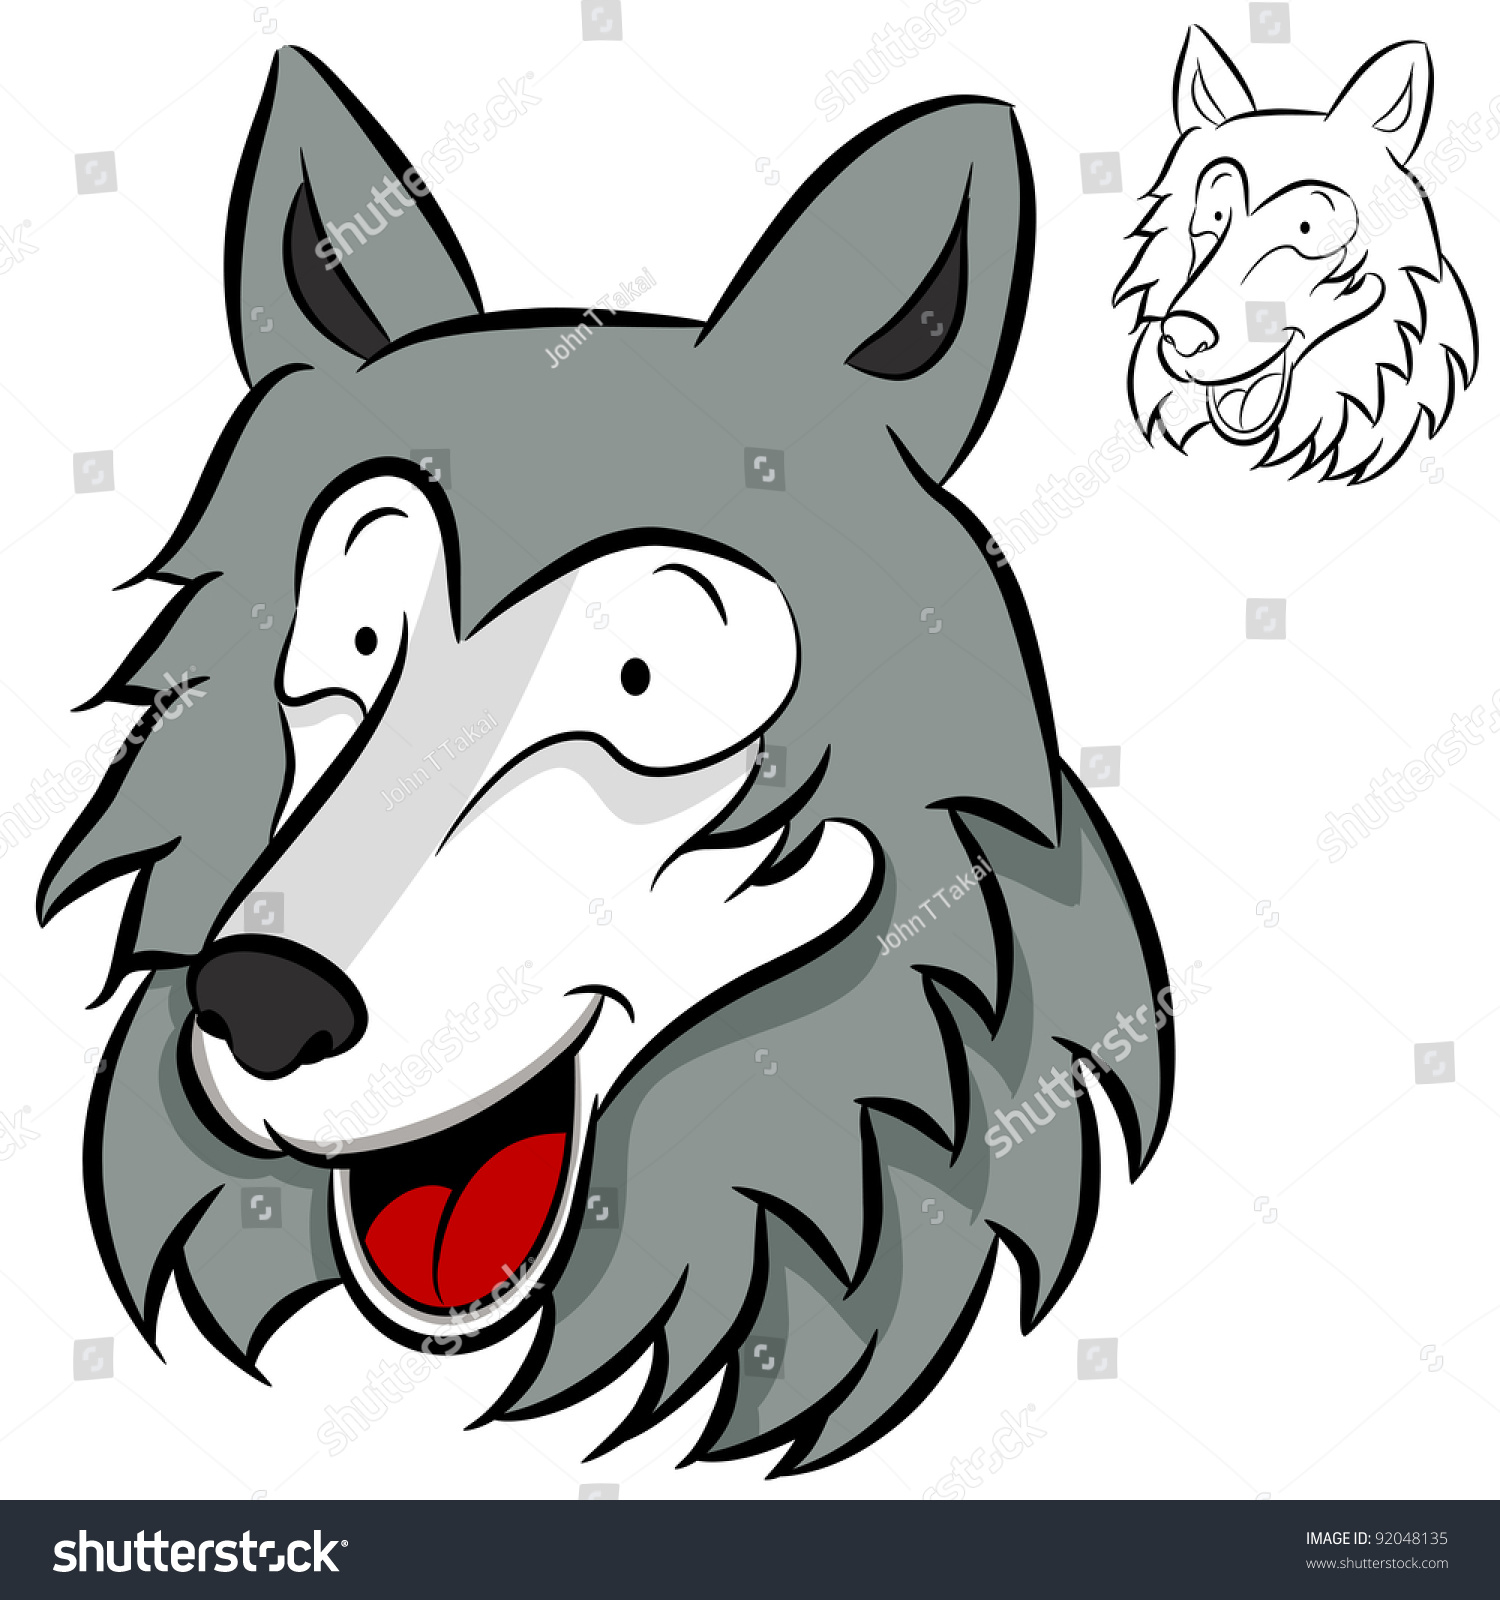 An Image Of A Cartoon Wolf Face. Stock Photo 92048135 : Shutterstock